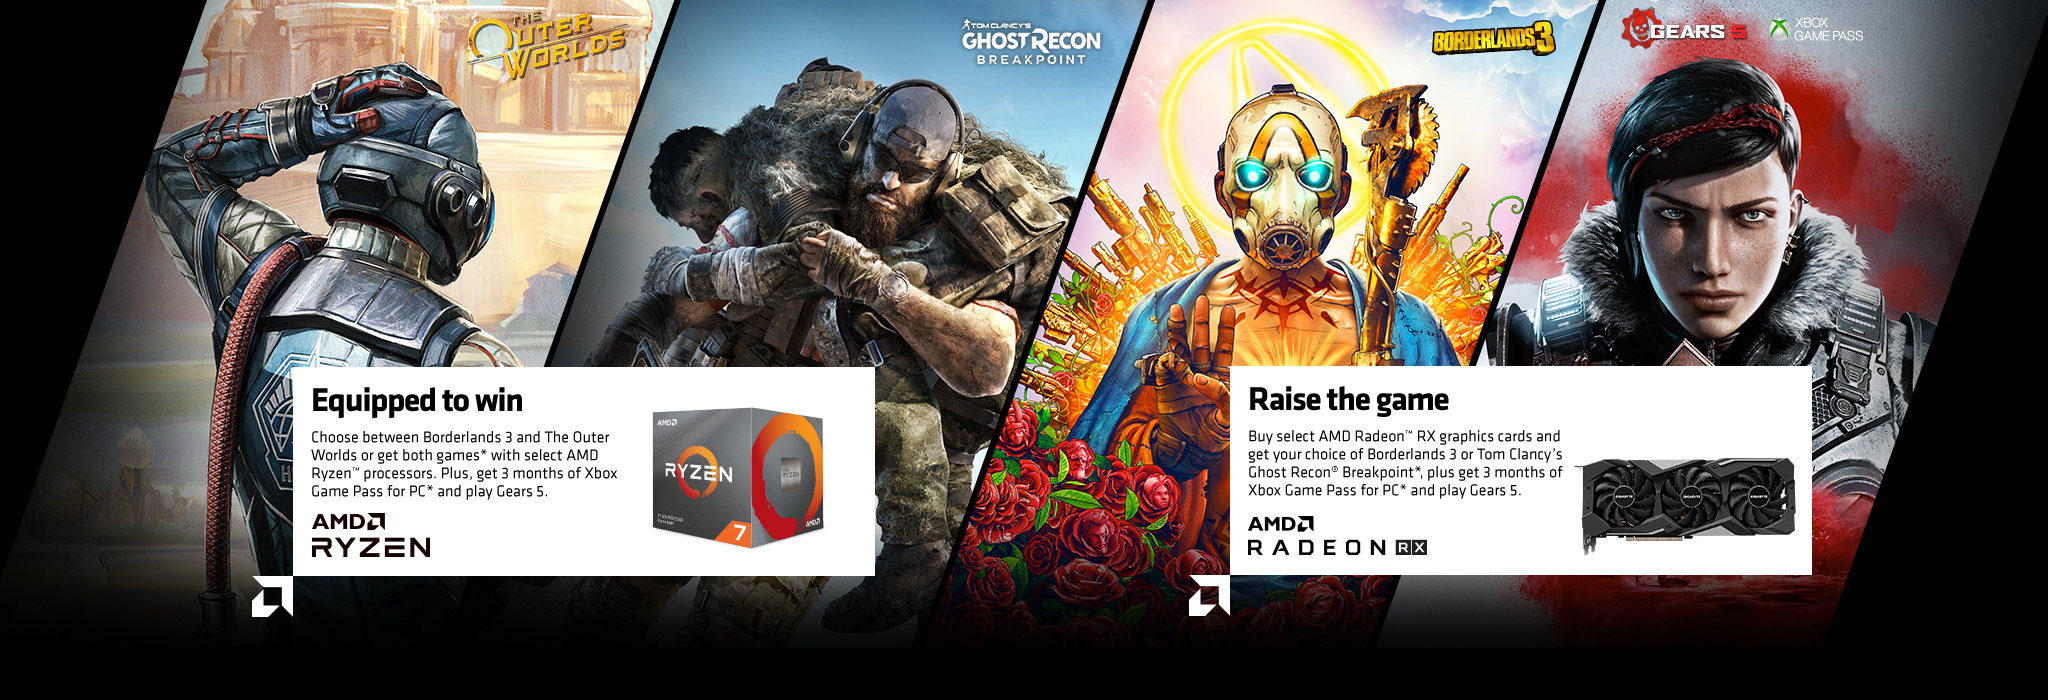 Xbox game pass redeem. AMD reward.